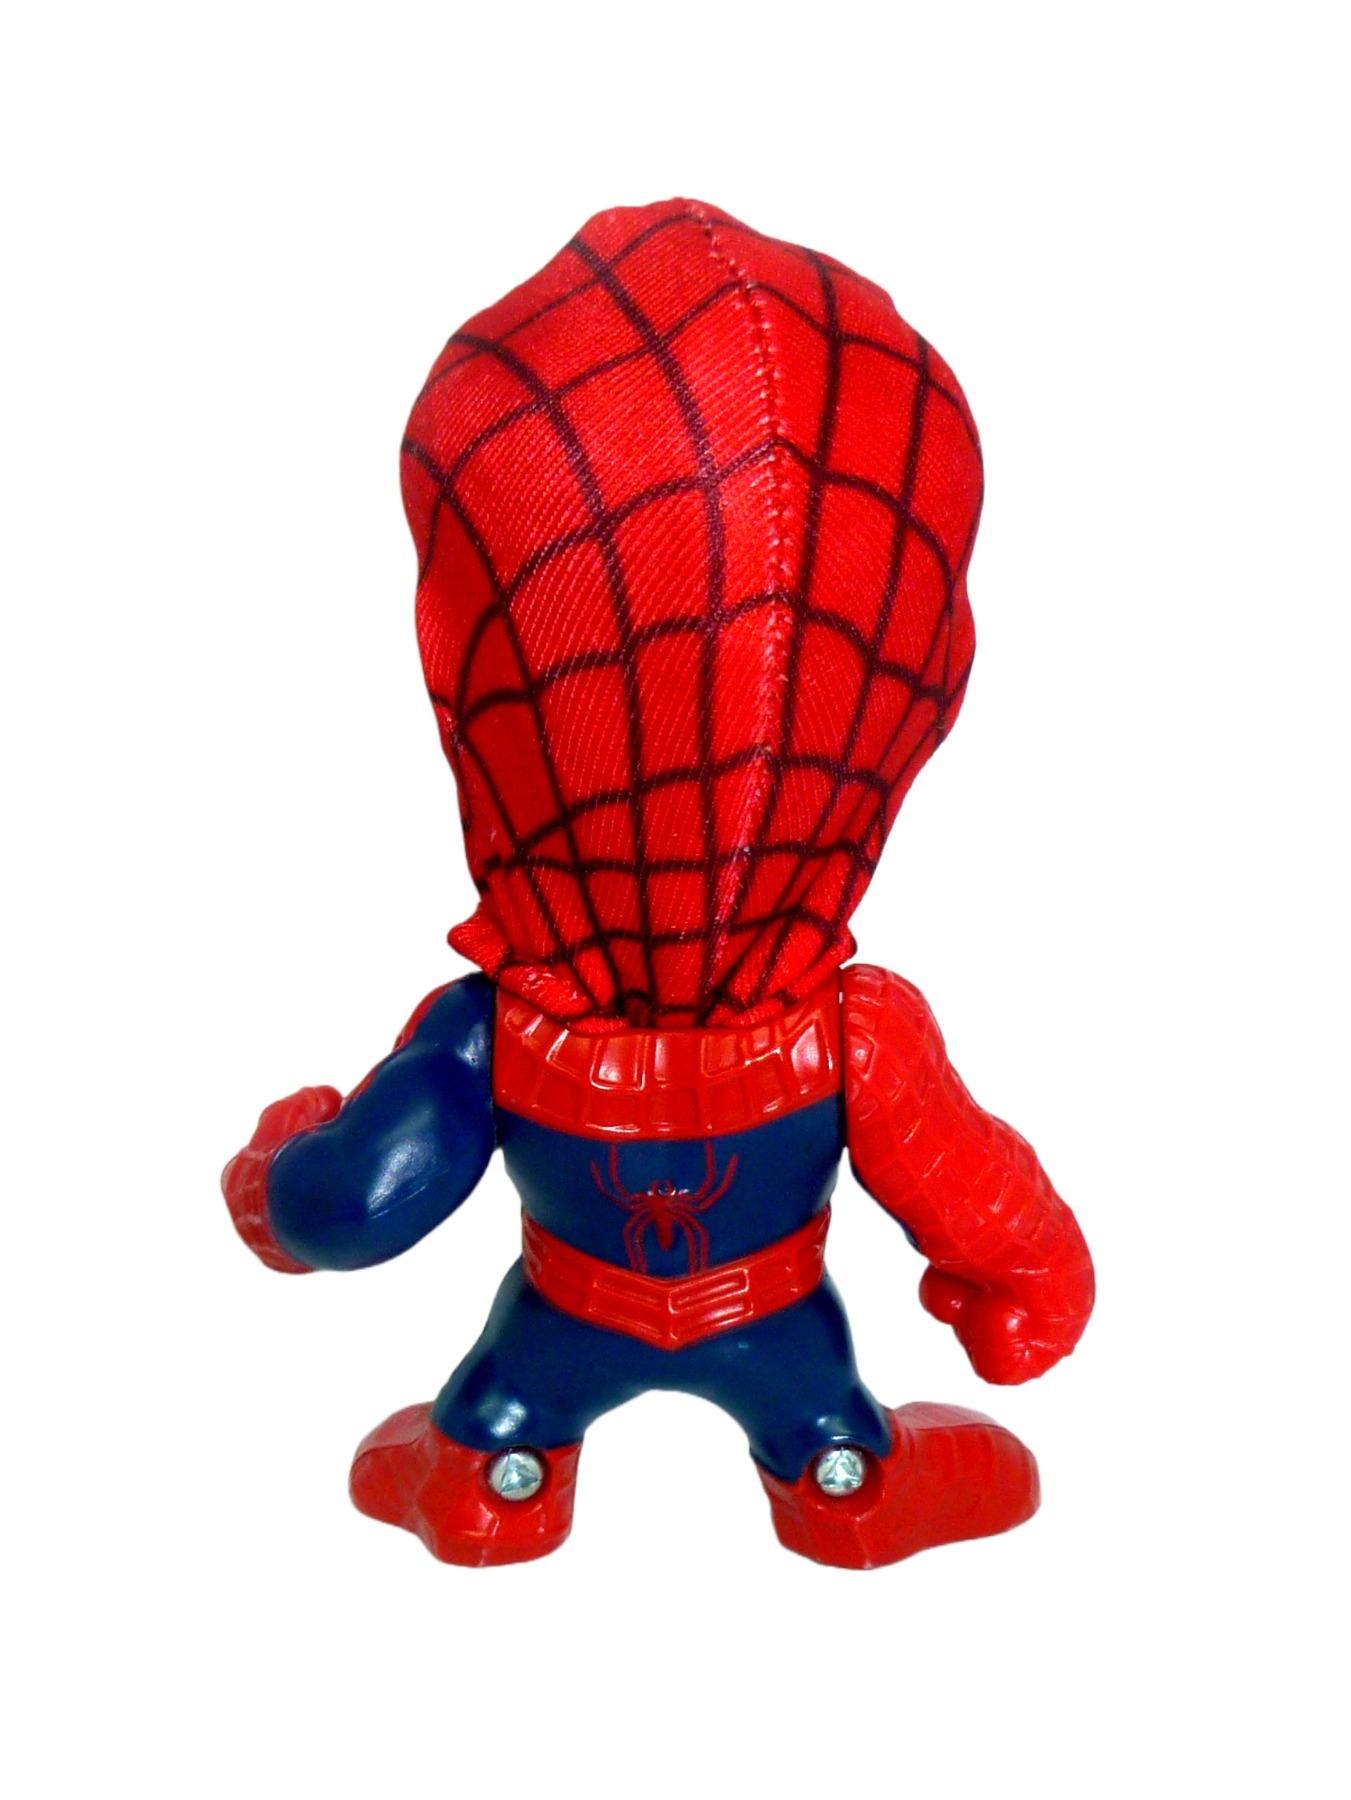 Spider-Man 3 Movie Figure Burger King 2006 4